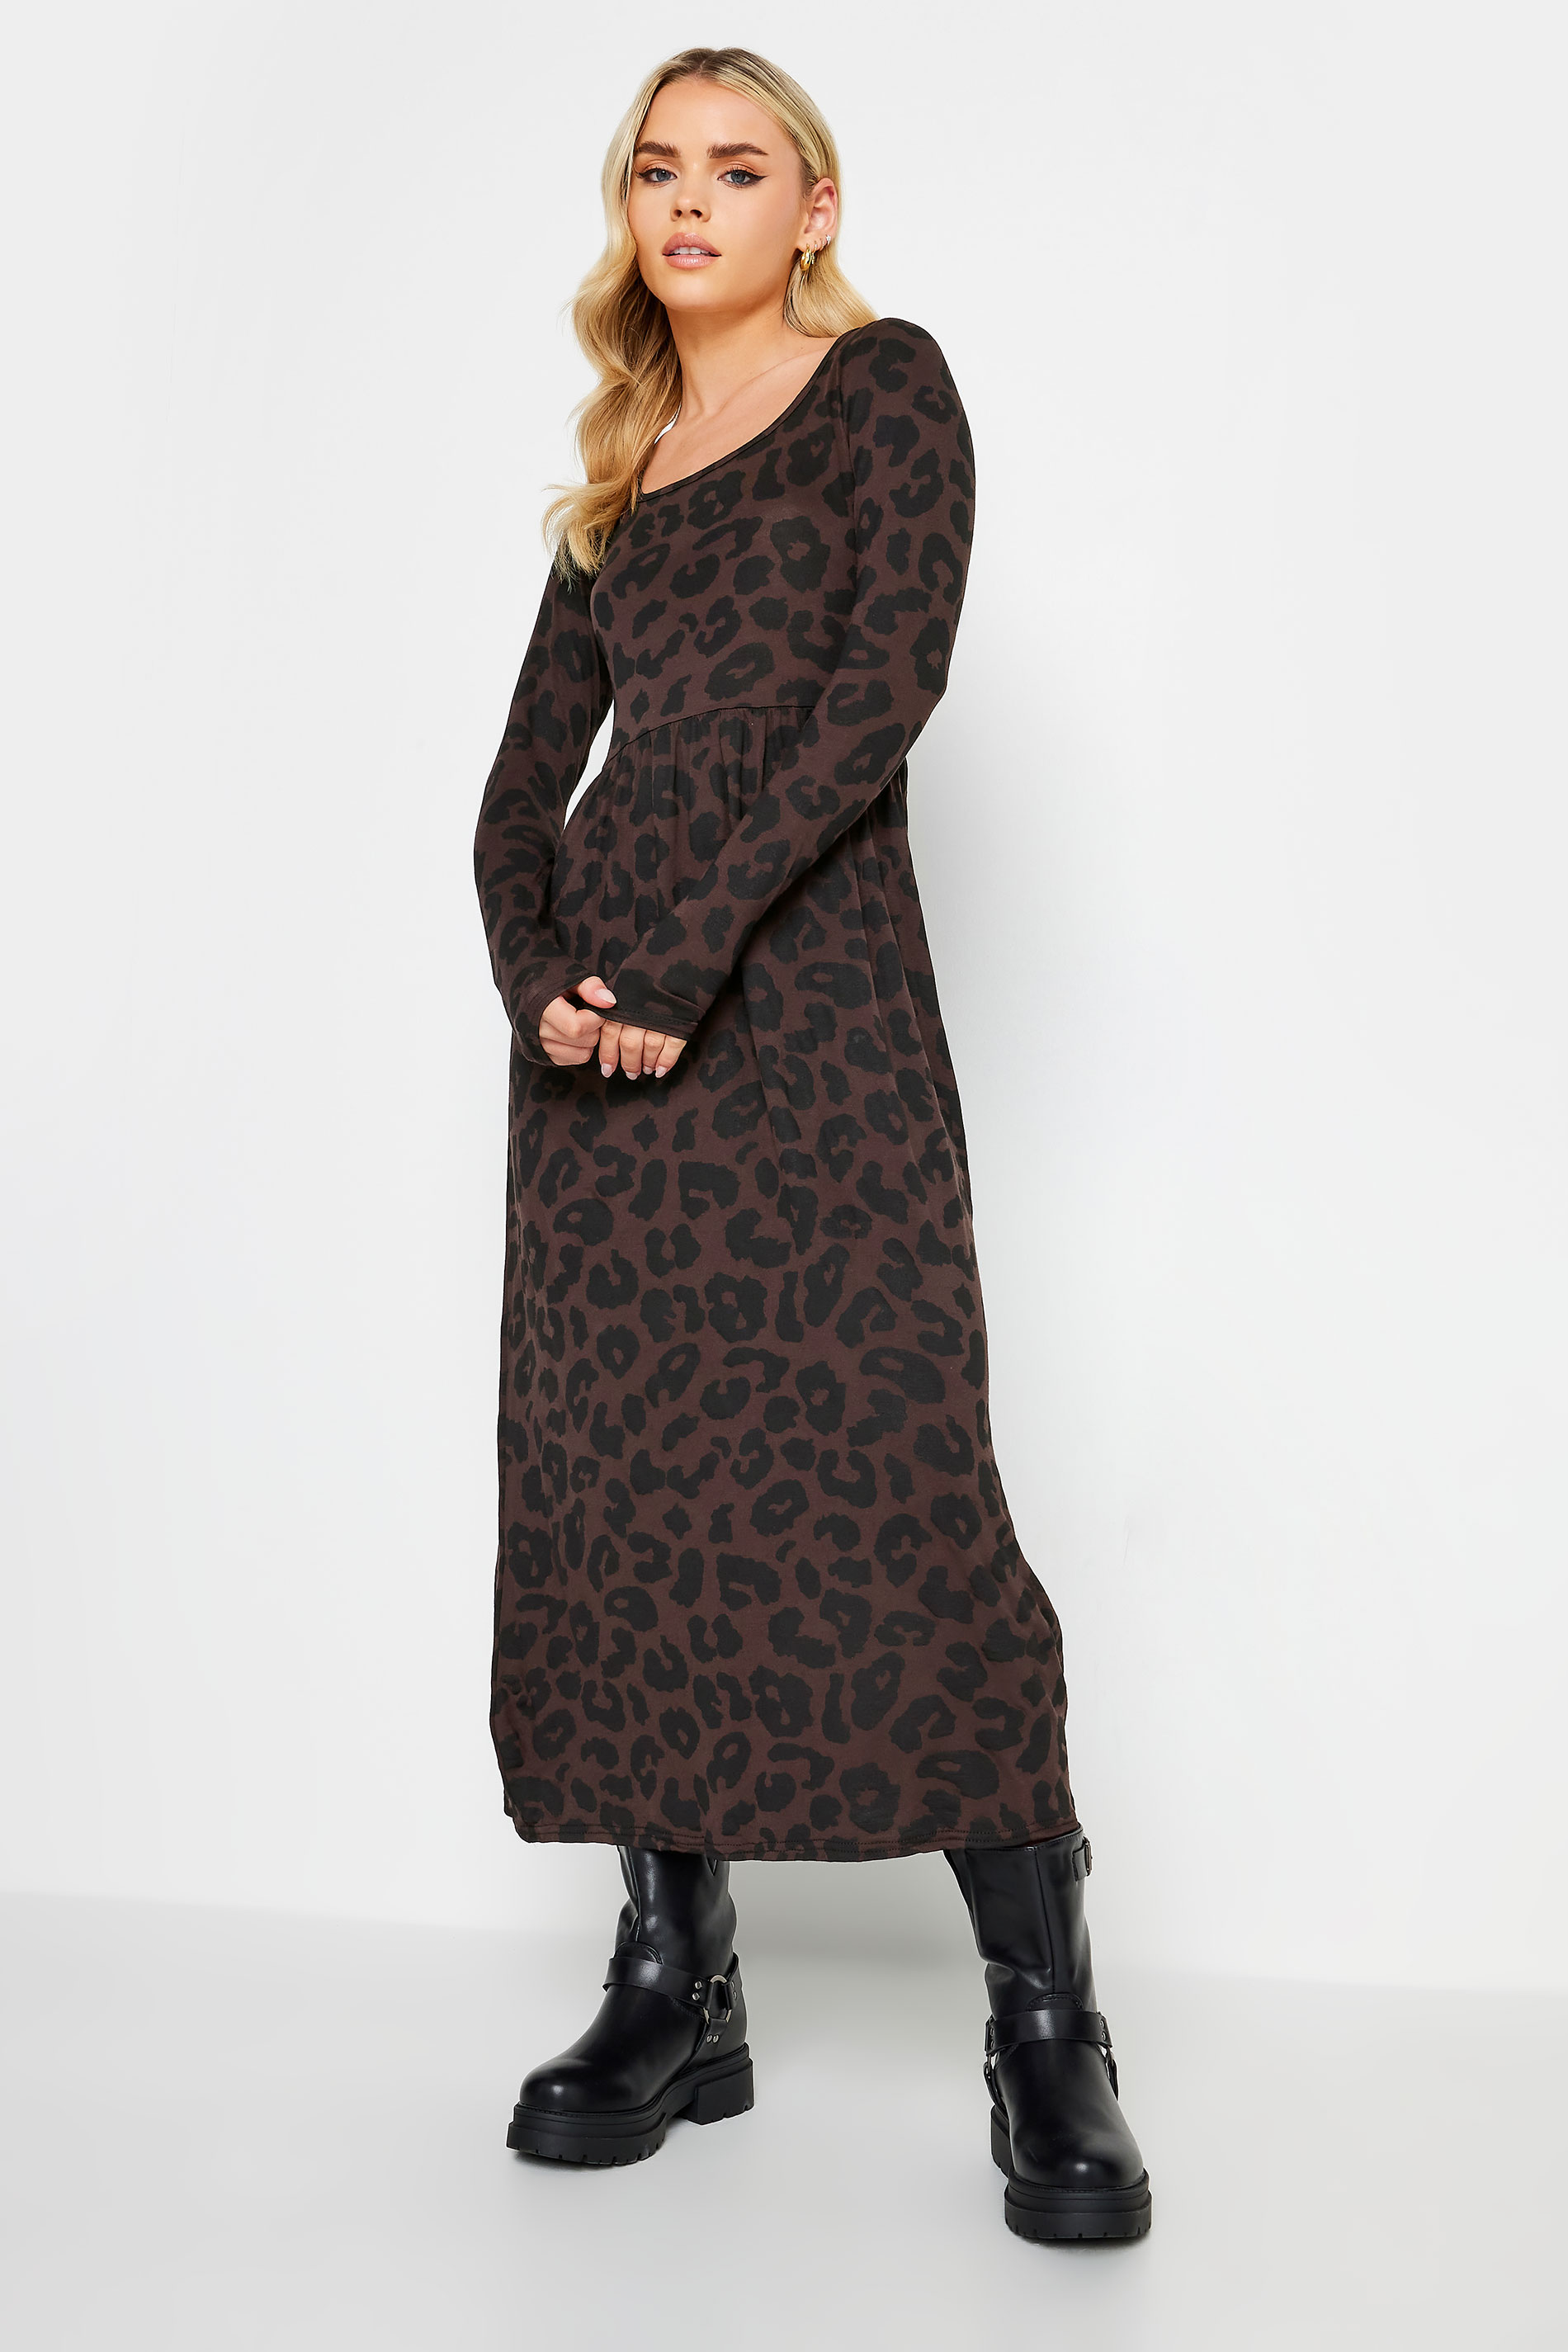 PixieGirl Petite Brown Leopard Print Long Sleeve Midi Dress | PixieGirl  1